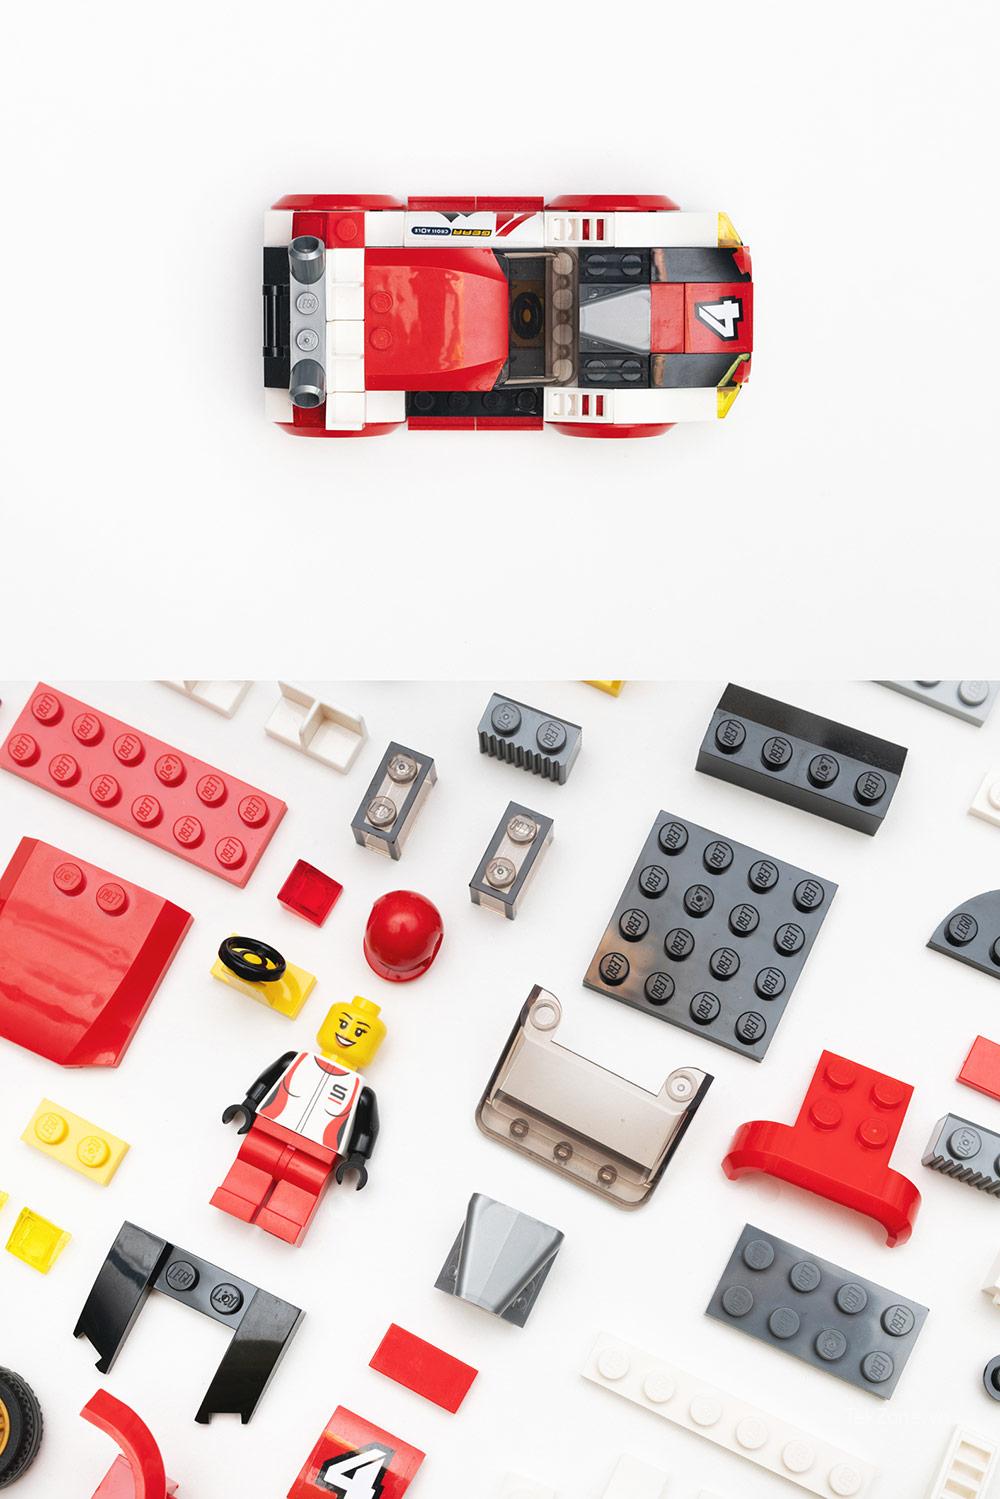 Tìm những cách thú vị và sáng tạo để chụp ảnh Lego hoặc các đồ vật nhỏ khác.  Bản quyền ảnh: Claire Gillo